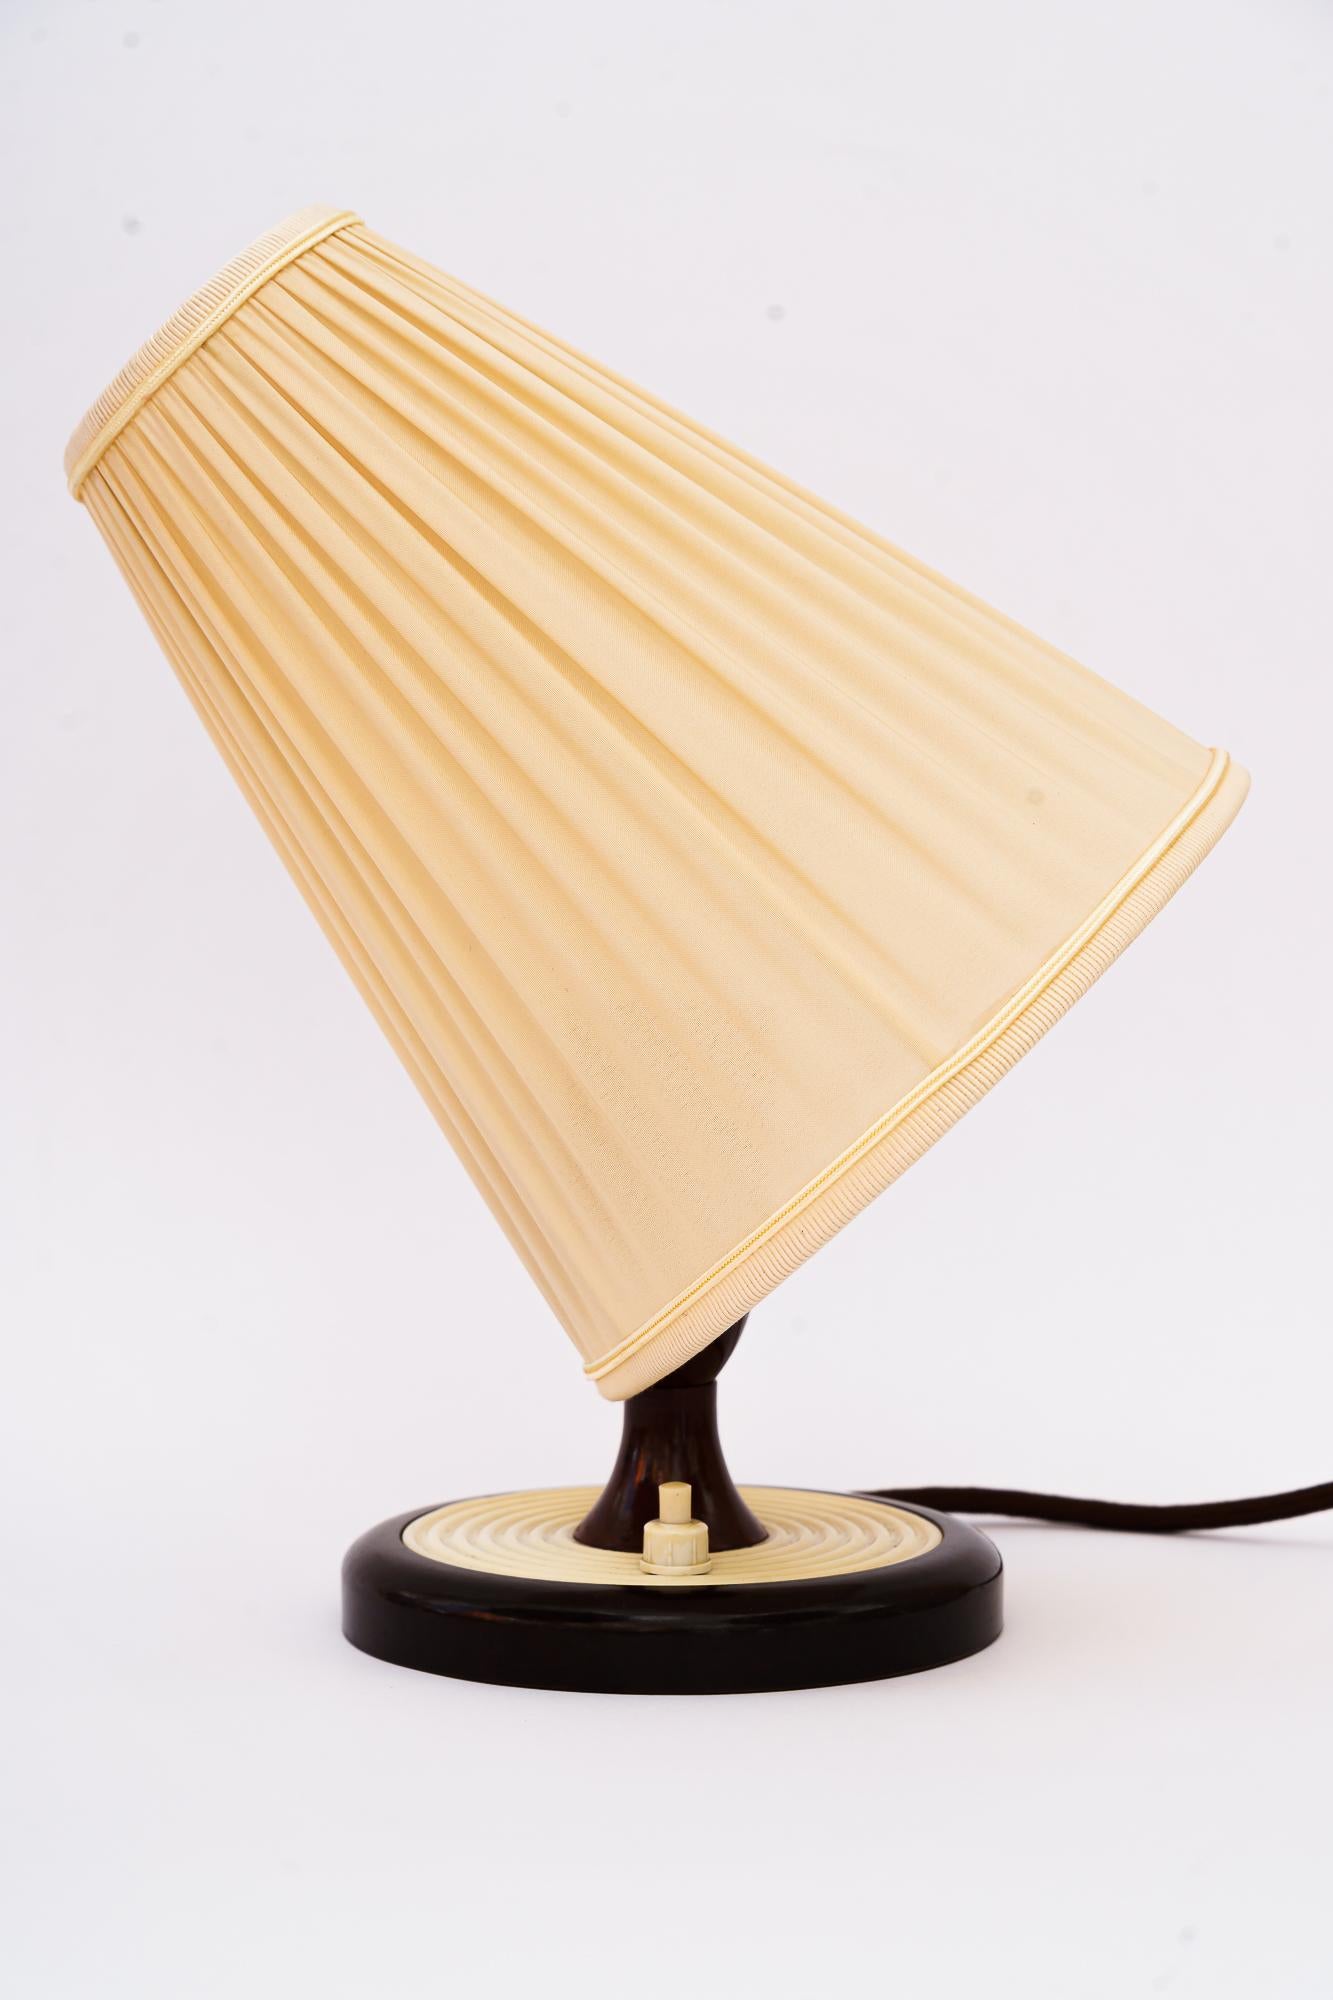 Lampe de table en bakélite Vienne avec abat-jour en tissu Autour des années 1960
Etat original
l'abat-jour en tissu est remplacé ( nouveau )